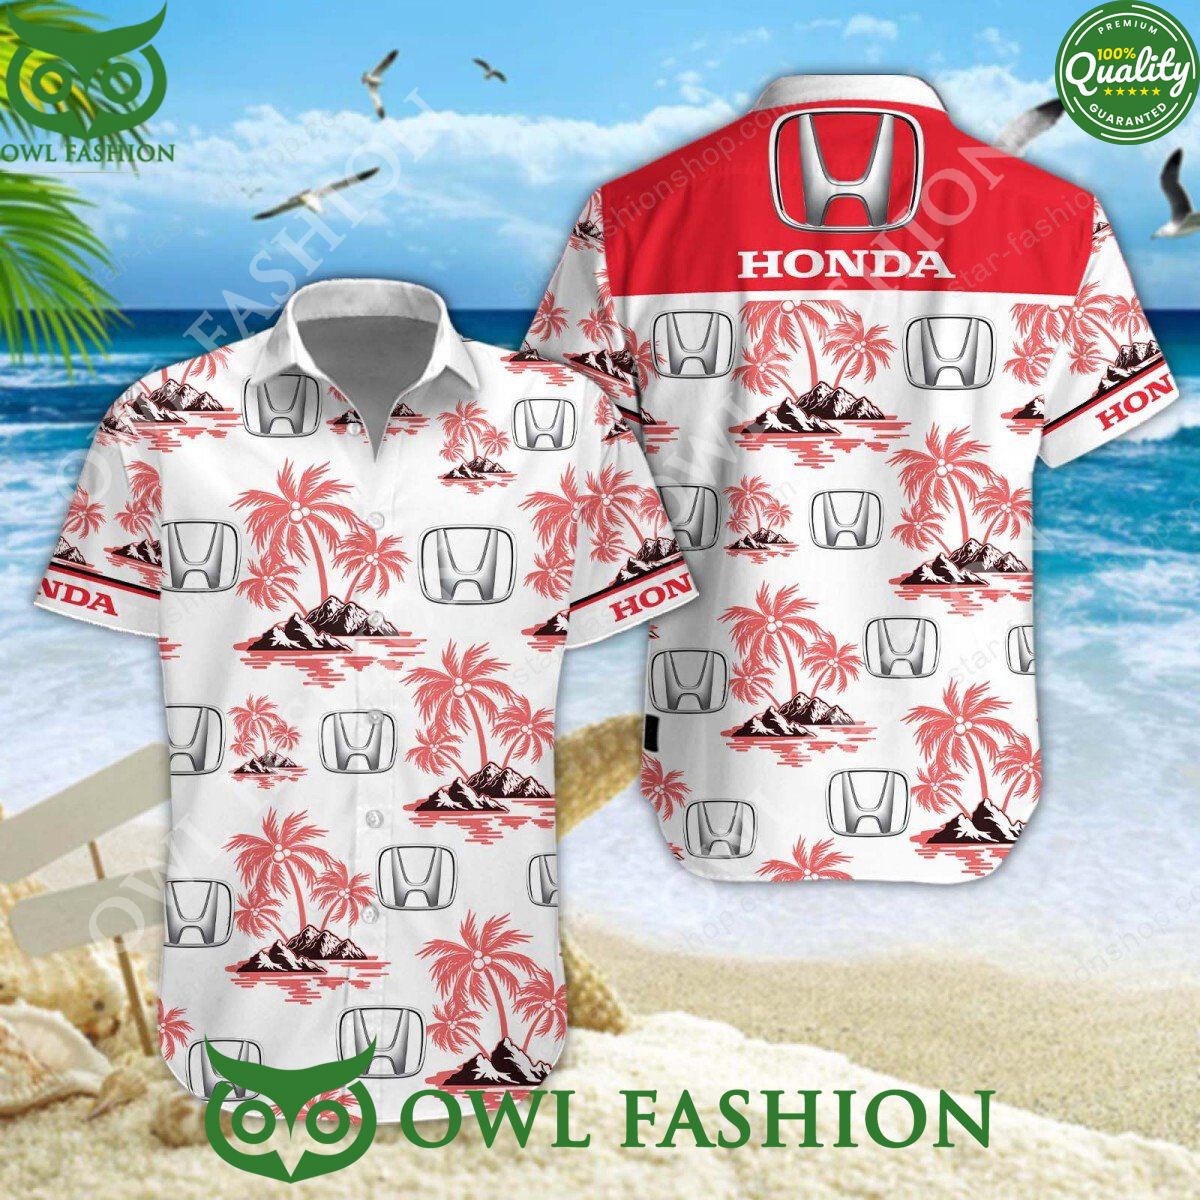 Honda Japanese Automobile Brand Hawaiian Shirt and Short Natural and awesome